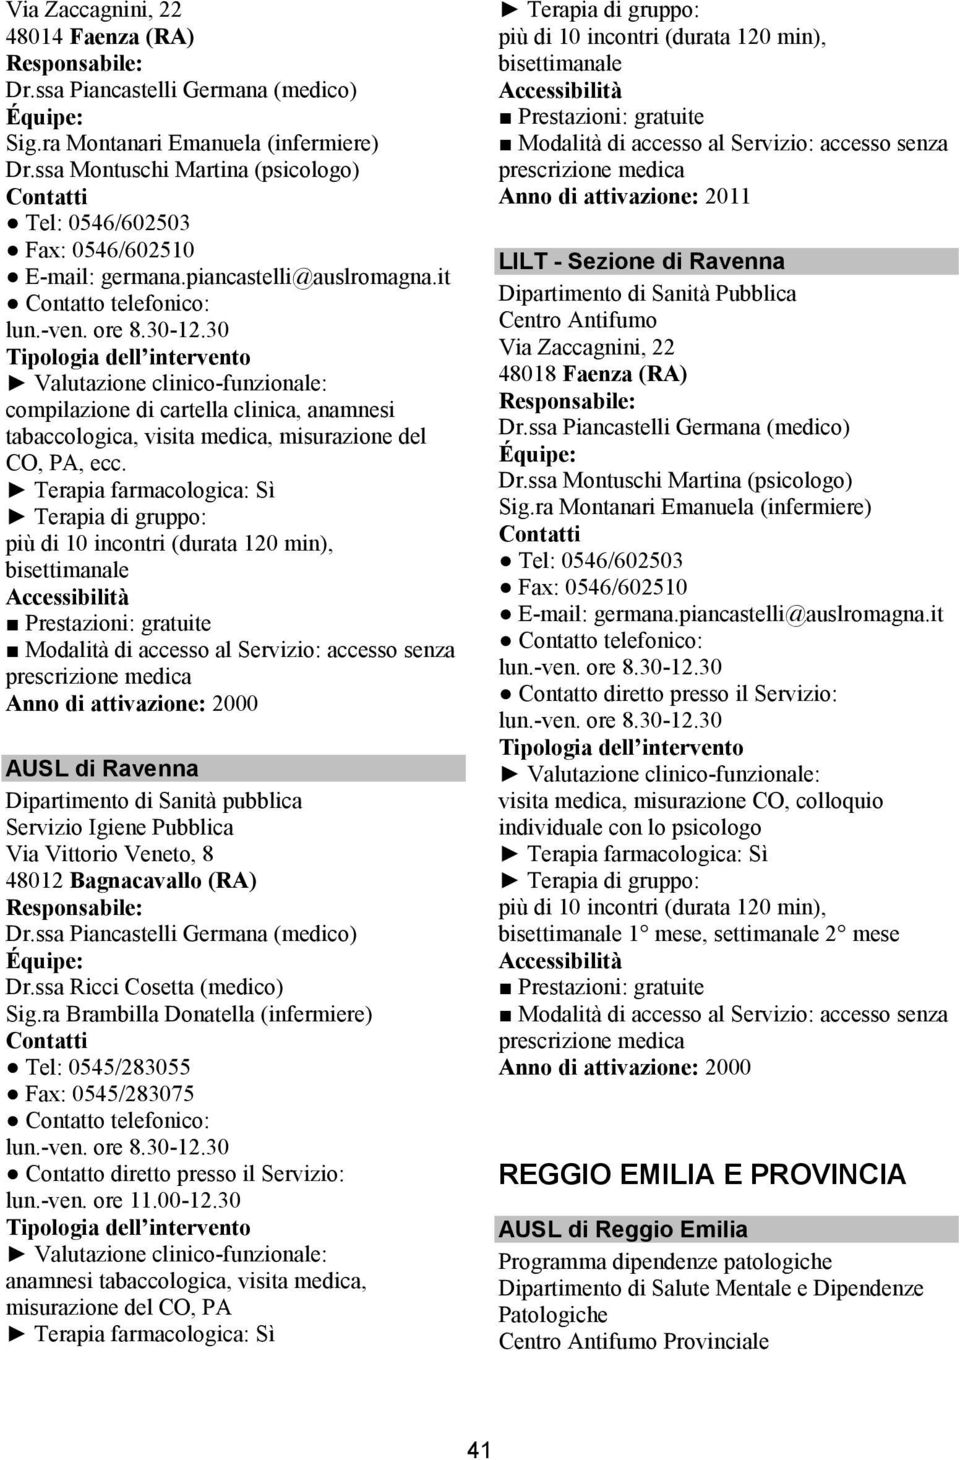 Anno di attivazione: 2000 AUSL di Ravenna Dipartimento di Sanità pubblica Servizio Igiene Pubblica Via Vittorio Veneto, 8 48012 Bagnacavallo (RA) Dr.ssa Piancastelli Germana (medico) Dr.